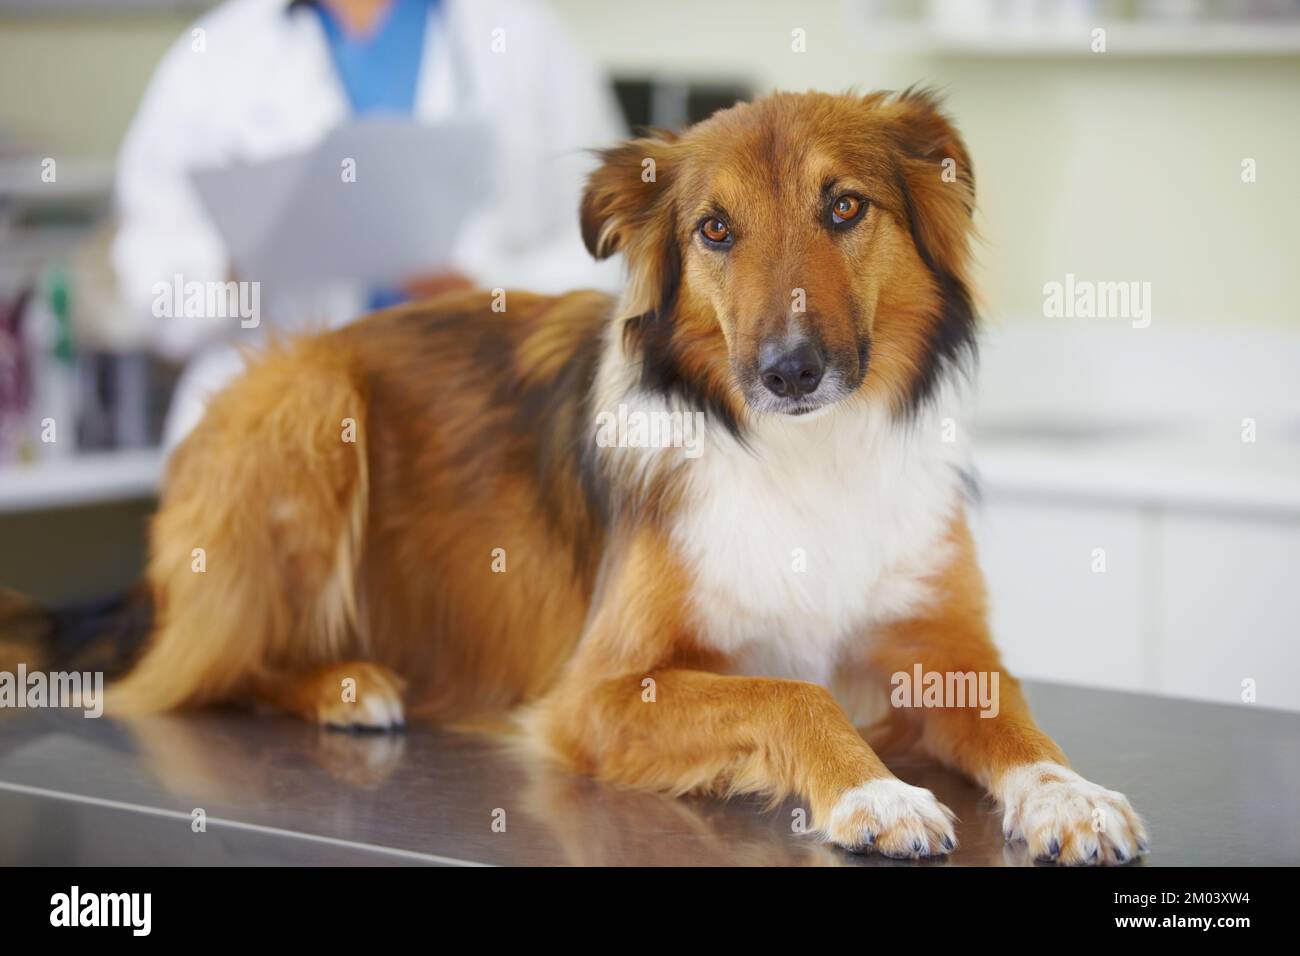 Sich selbst tut es sehr leid. Porträt eines Hundes, der auf dem Untersuchungstisch des Tierarztes sitzt. Stockfoto